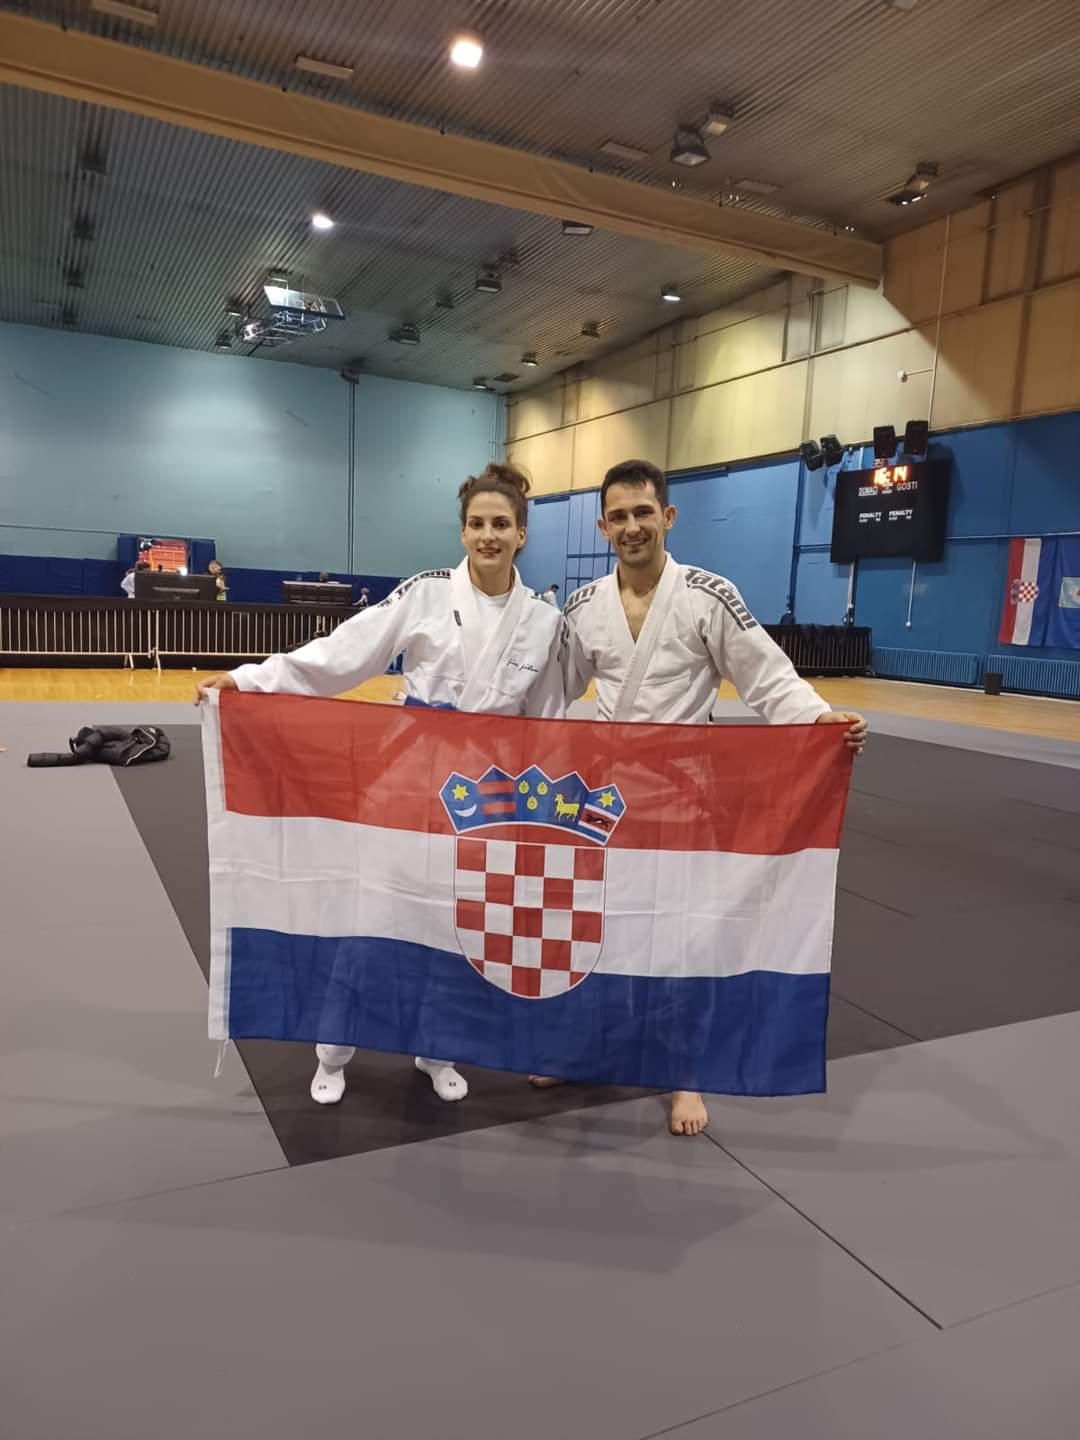 Europsko ju jitsu prvenstvo: Marijana Boban peto mjesto, Danijel Boban deveto mjesto